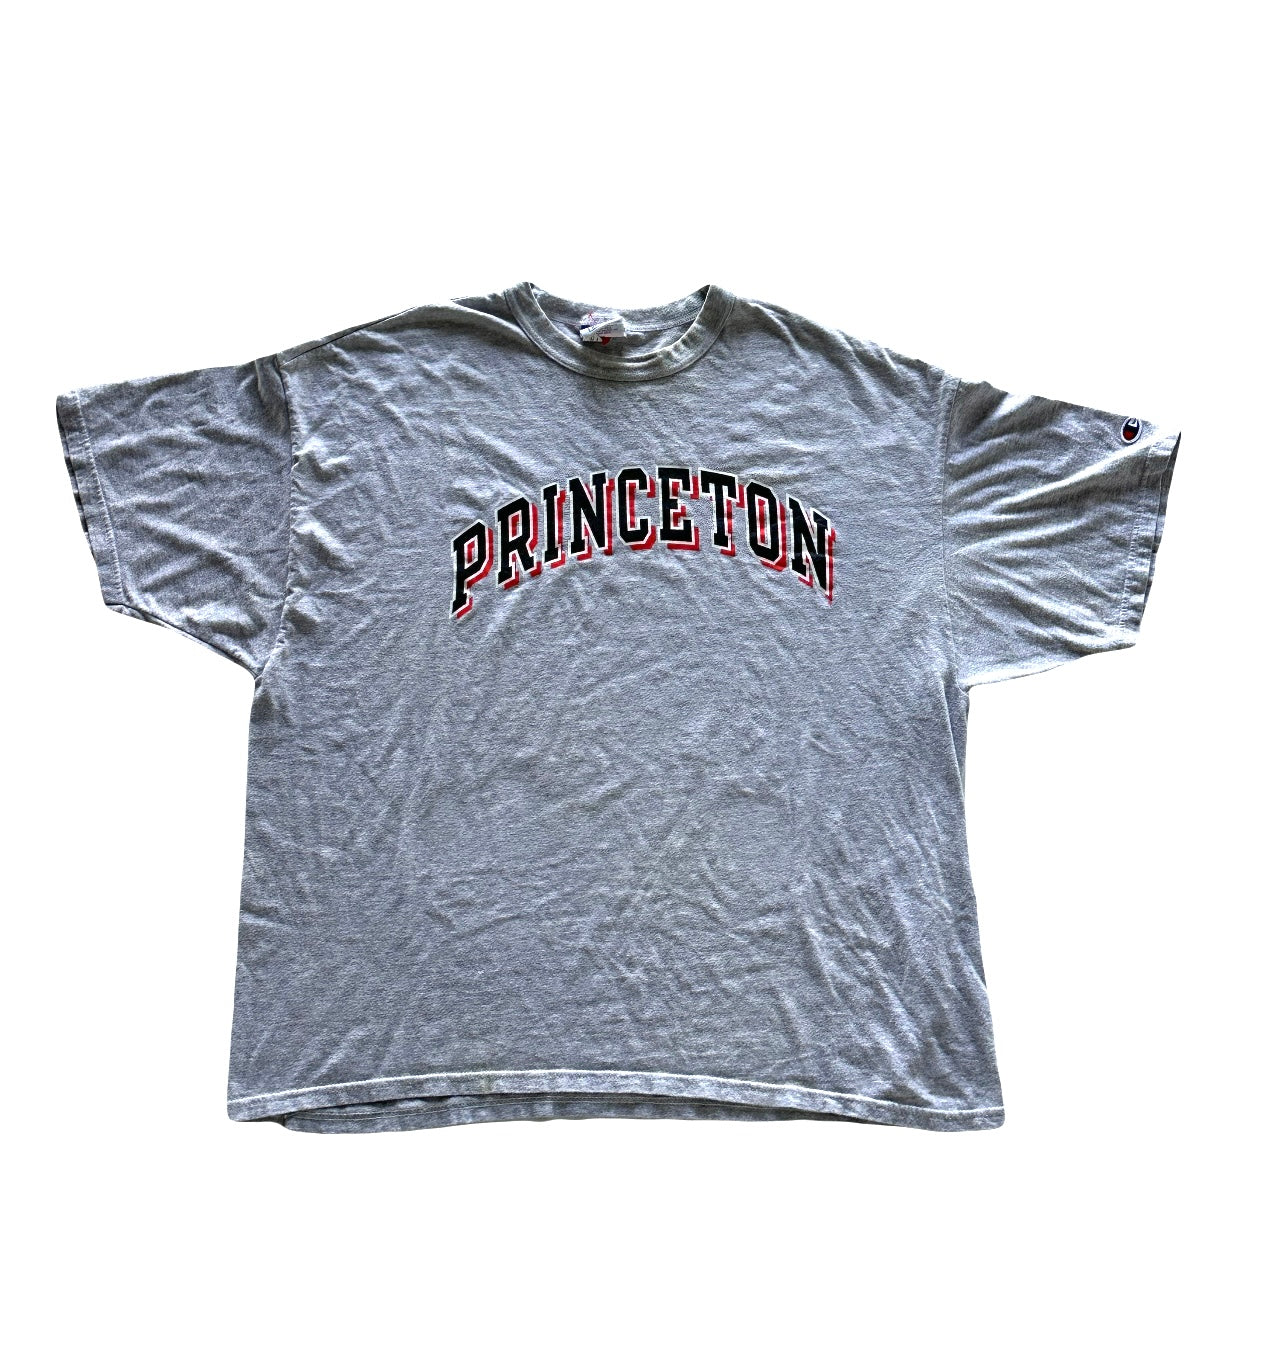 Princeton Tee